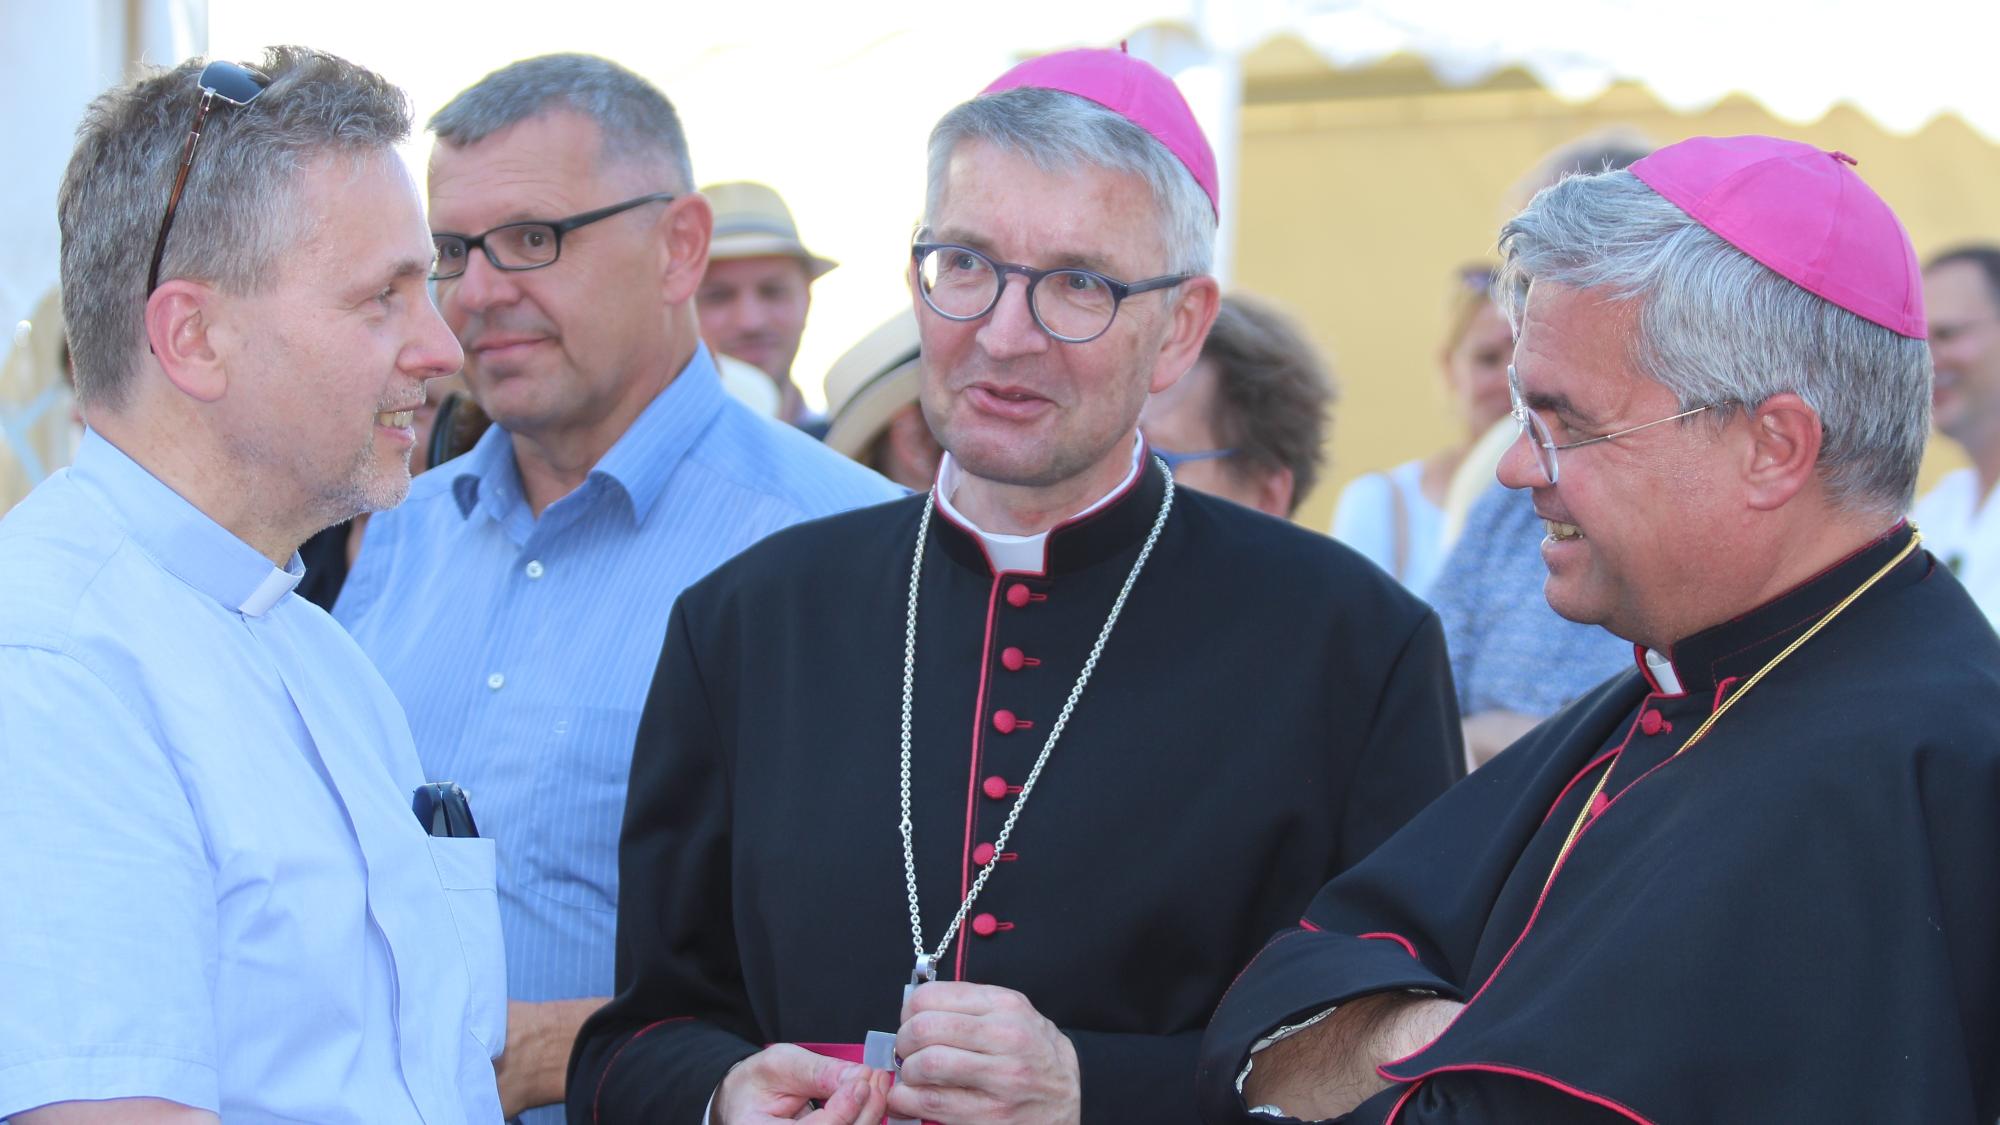 Mainz, 12. Juni 2022: Bischof Peter Kohlgraf im Gespräch mit Pfarrer Markus Lerchl (links) und Weihbischof Udo Markus Bentz (rechts).